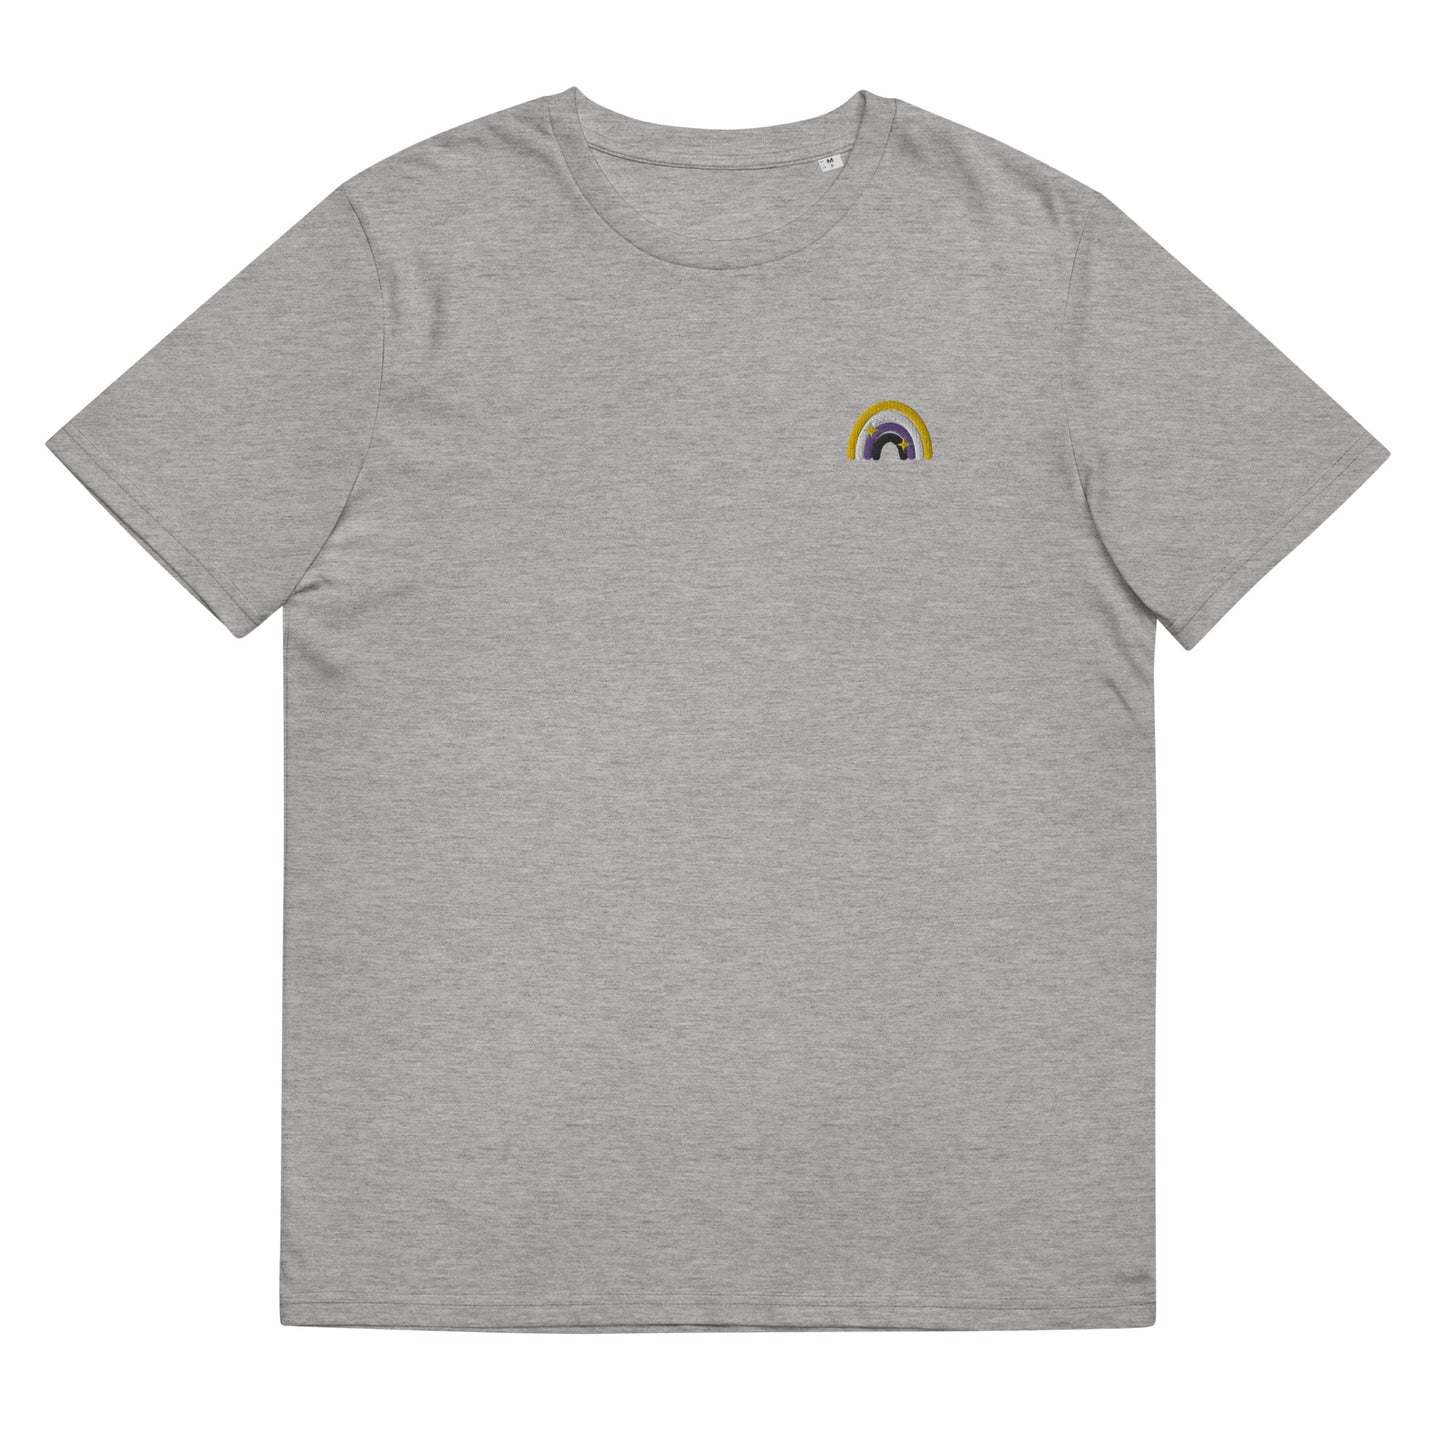 T-shirt en coton biologique : broderie arc-en-ciel non binaire